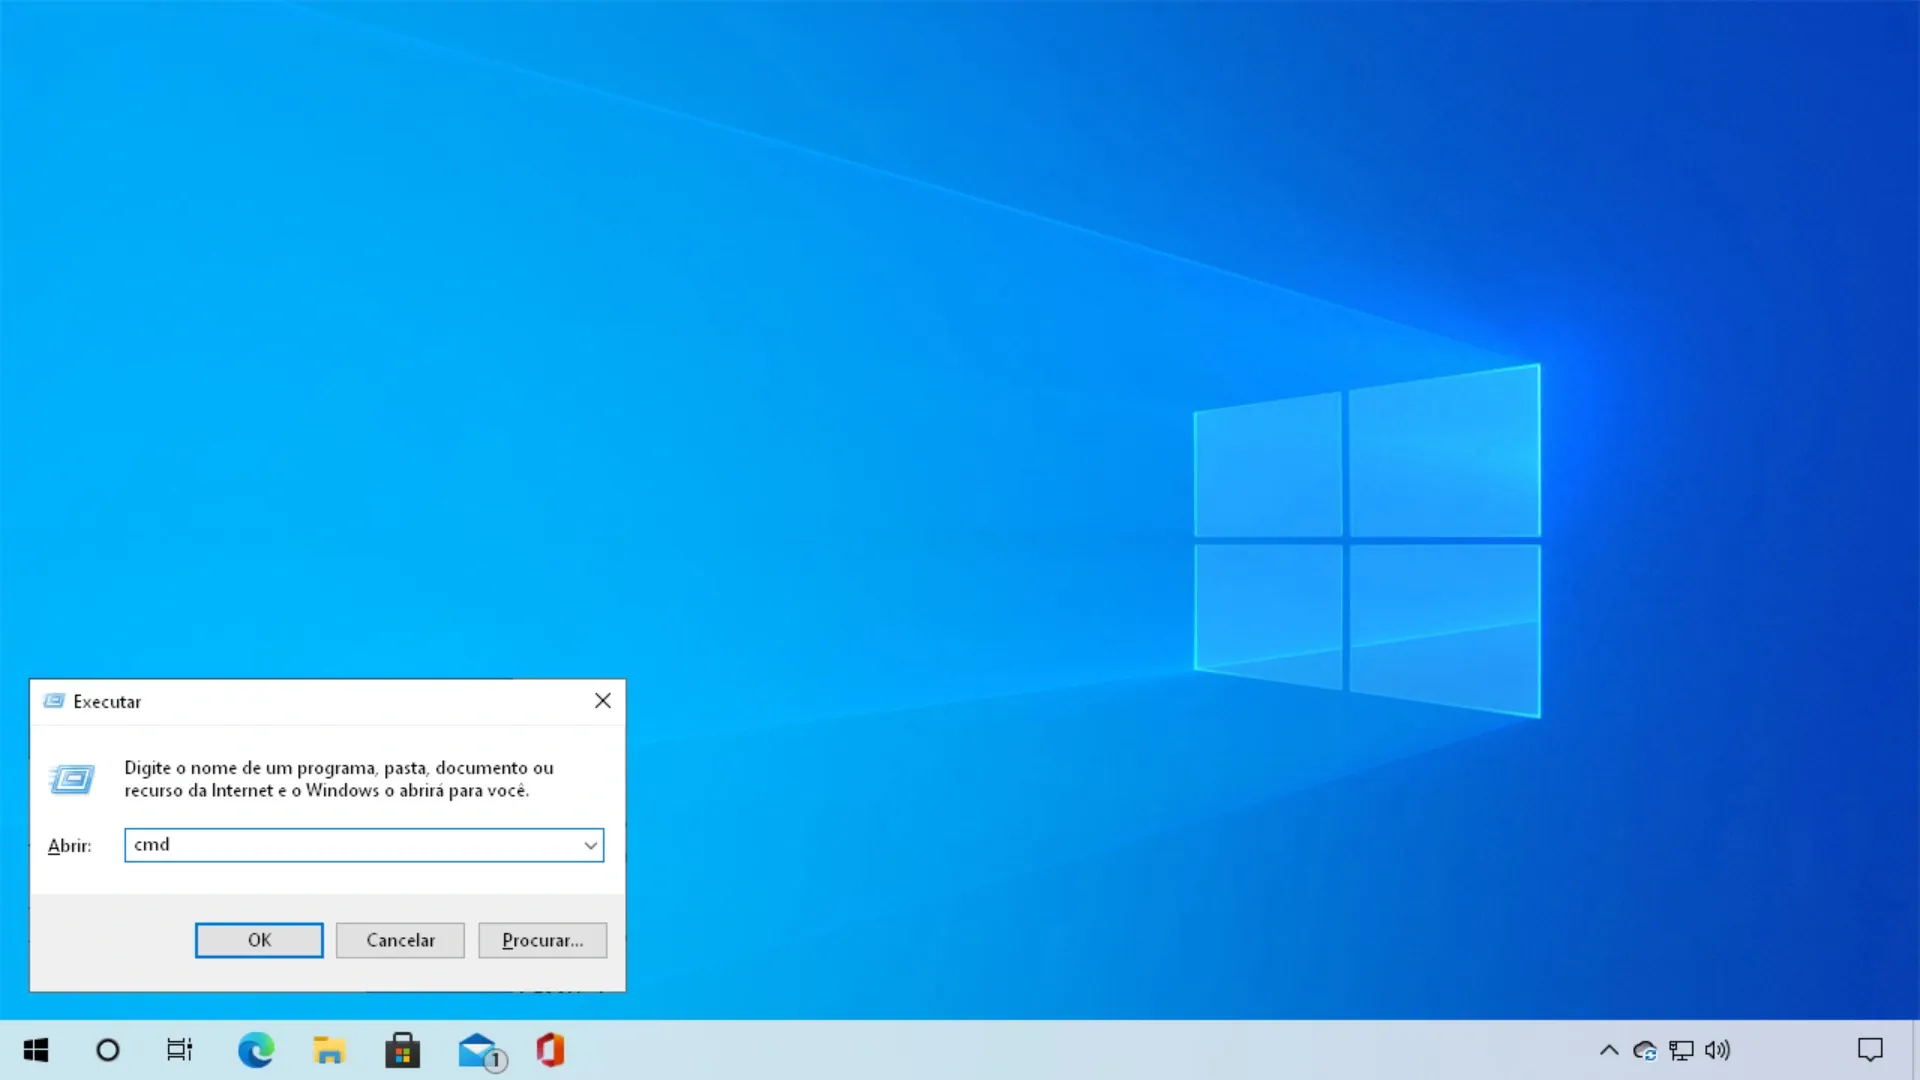 Mais de dez maneiras de abrir o Prompt de Comando no Windows 10